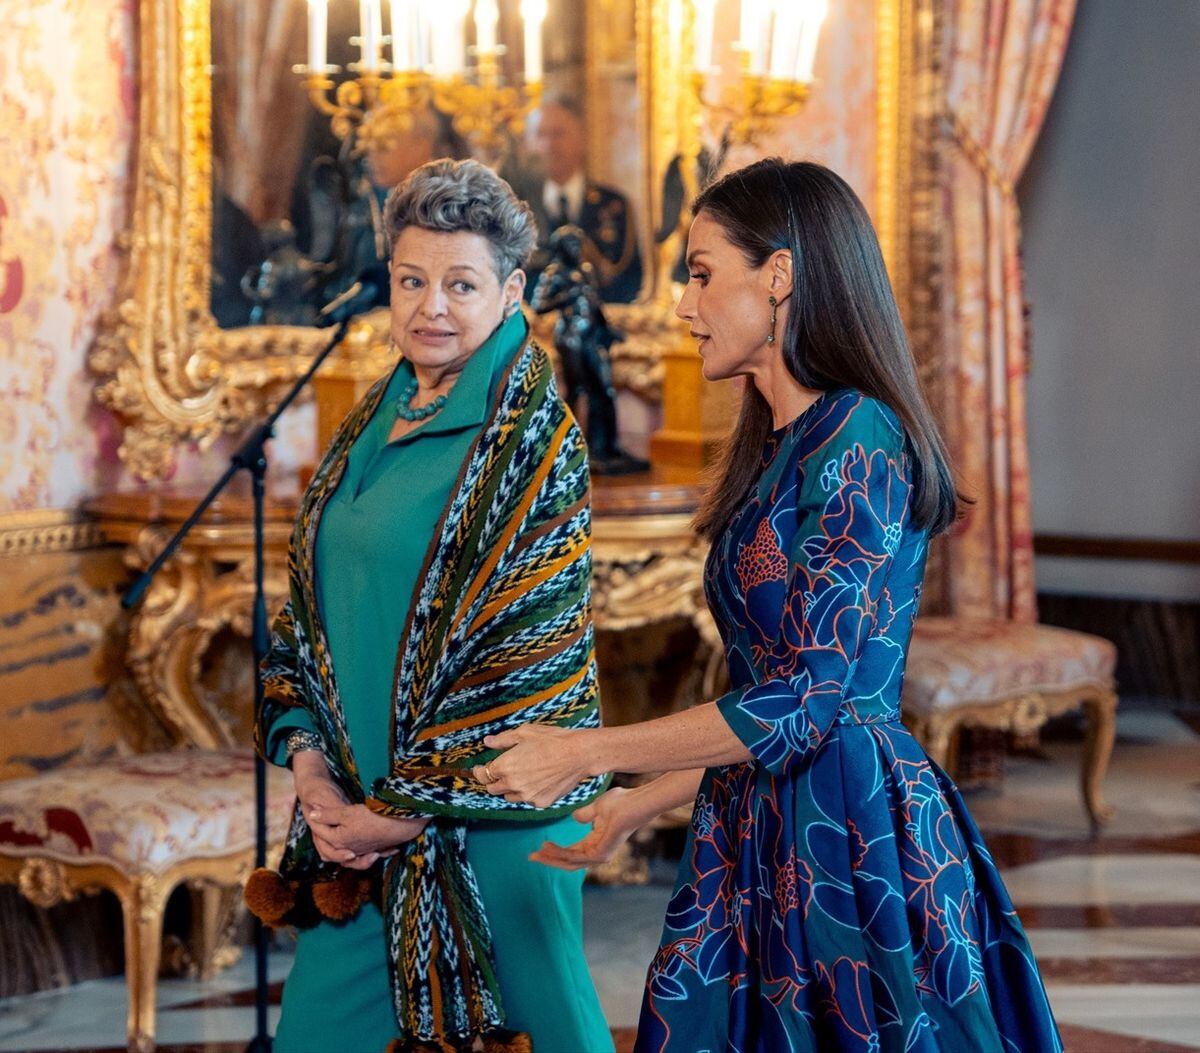 La reina Letizia recurre a uno de sus vestidos favoritos de Carolina Herrera